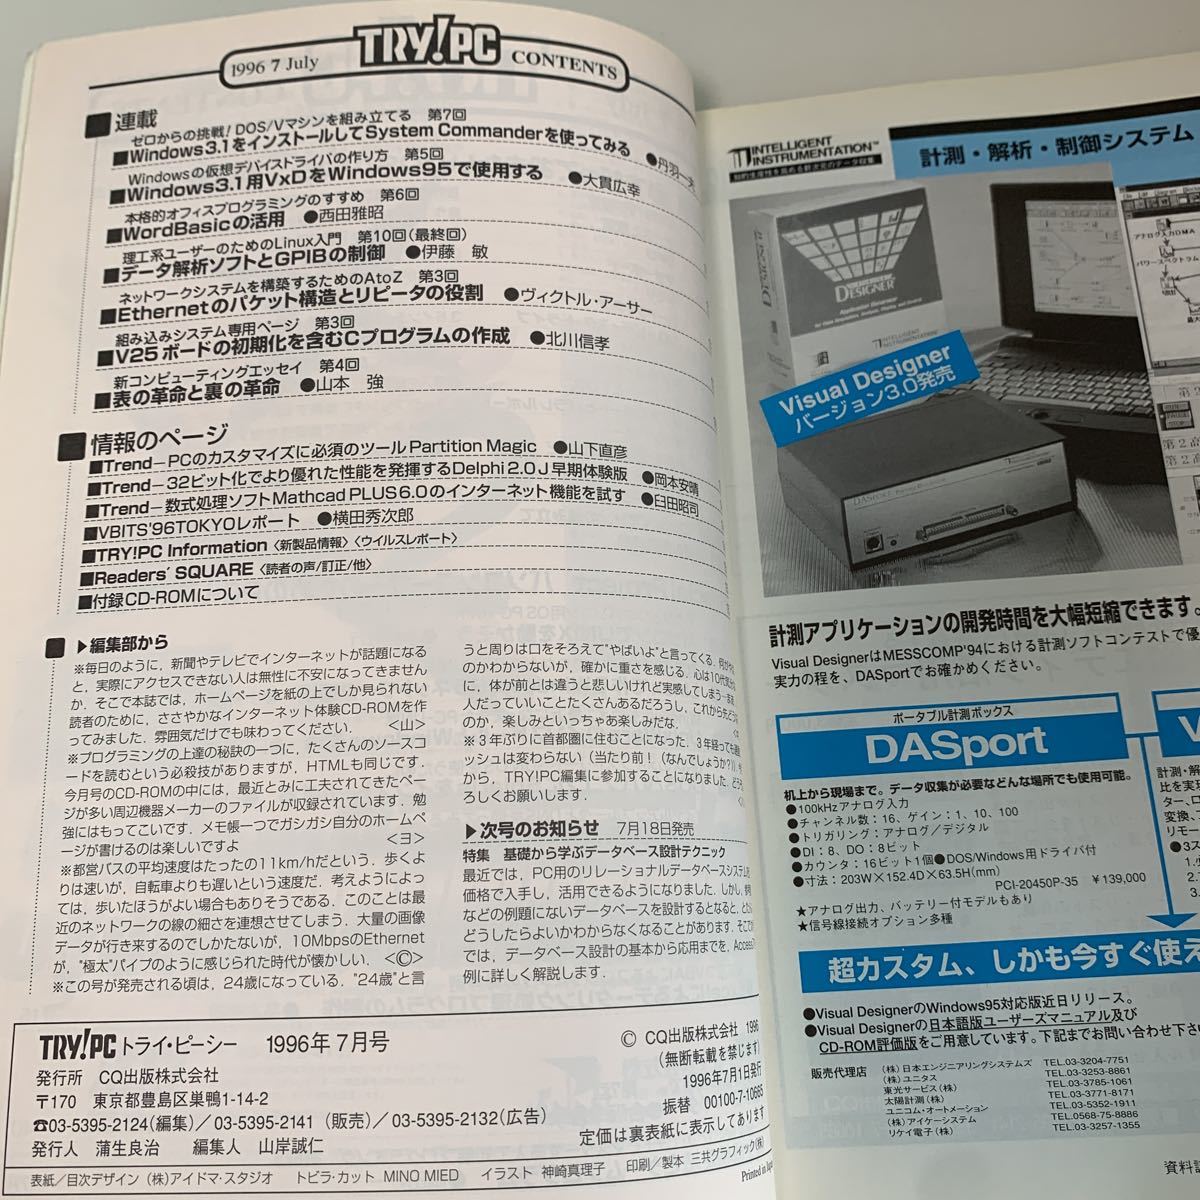 yh79@ TRY PC トライピーシー スーパーユーザー ネットワーク 1996年7月 パソコン初期 IT時代 AtoZ 付録無し パソコン技術 プログラミング_画像4